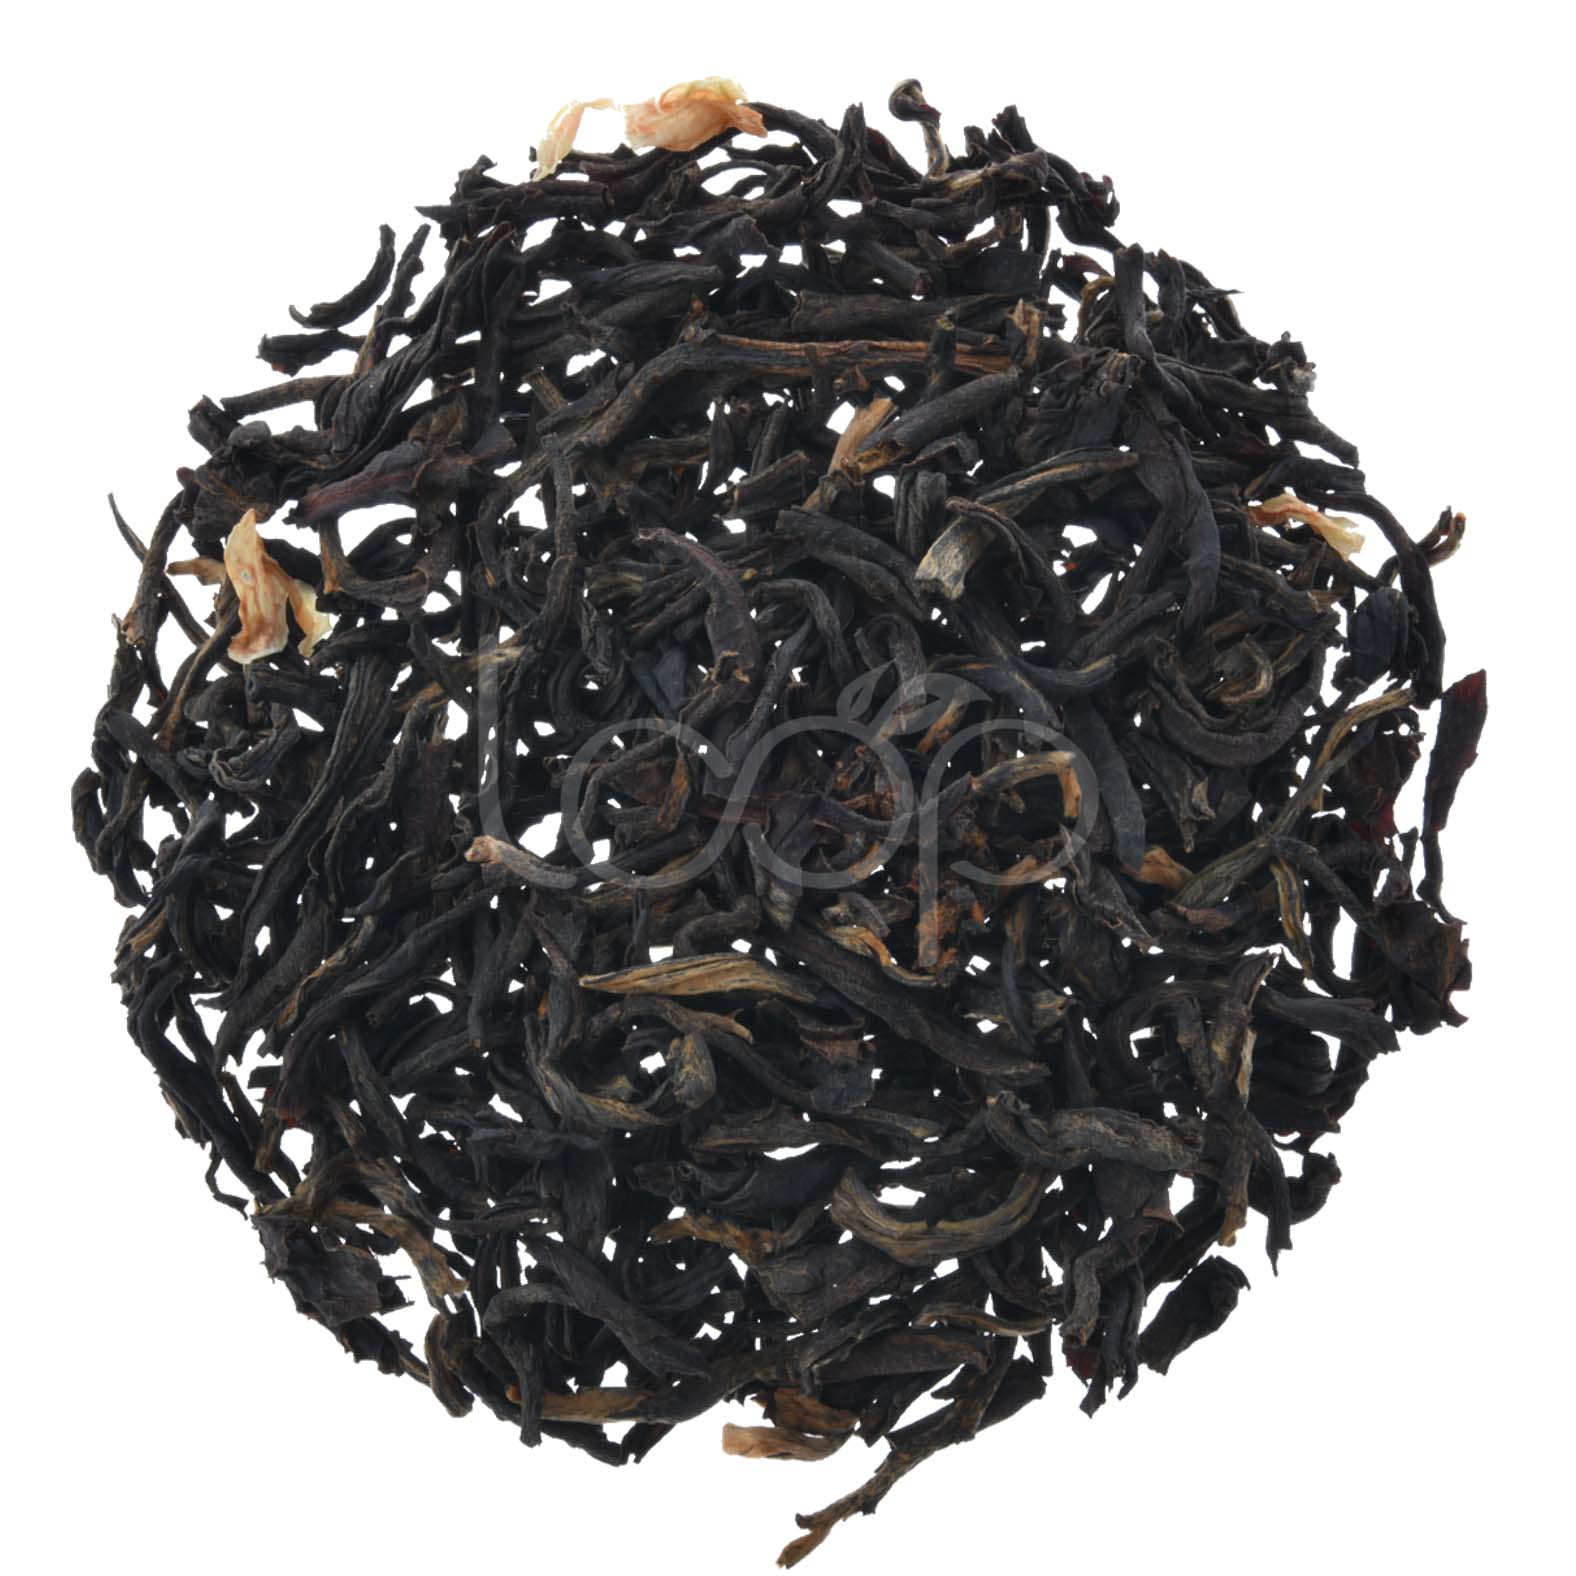 תה יסמין שחור בניחוח טבעי תה סיני